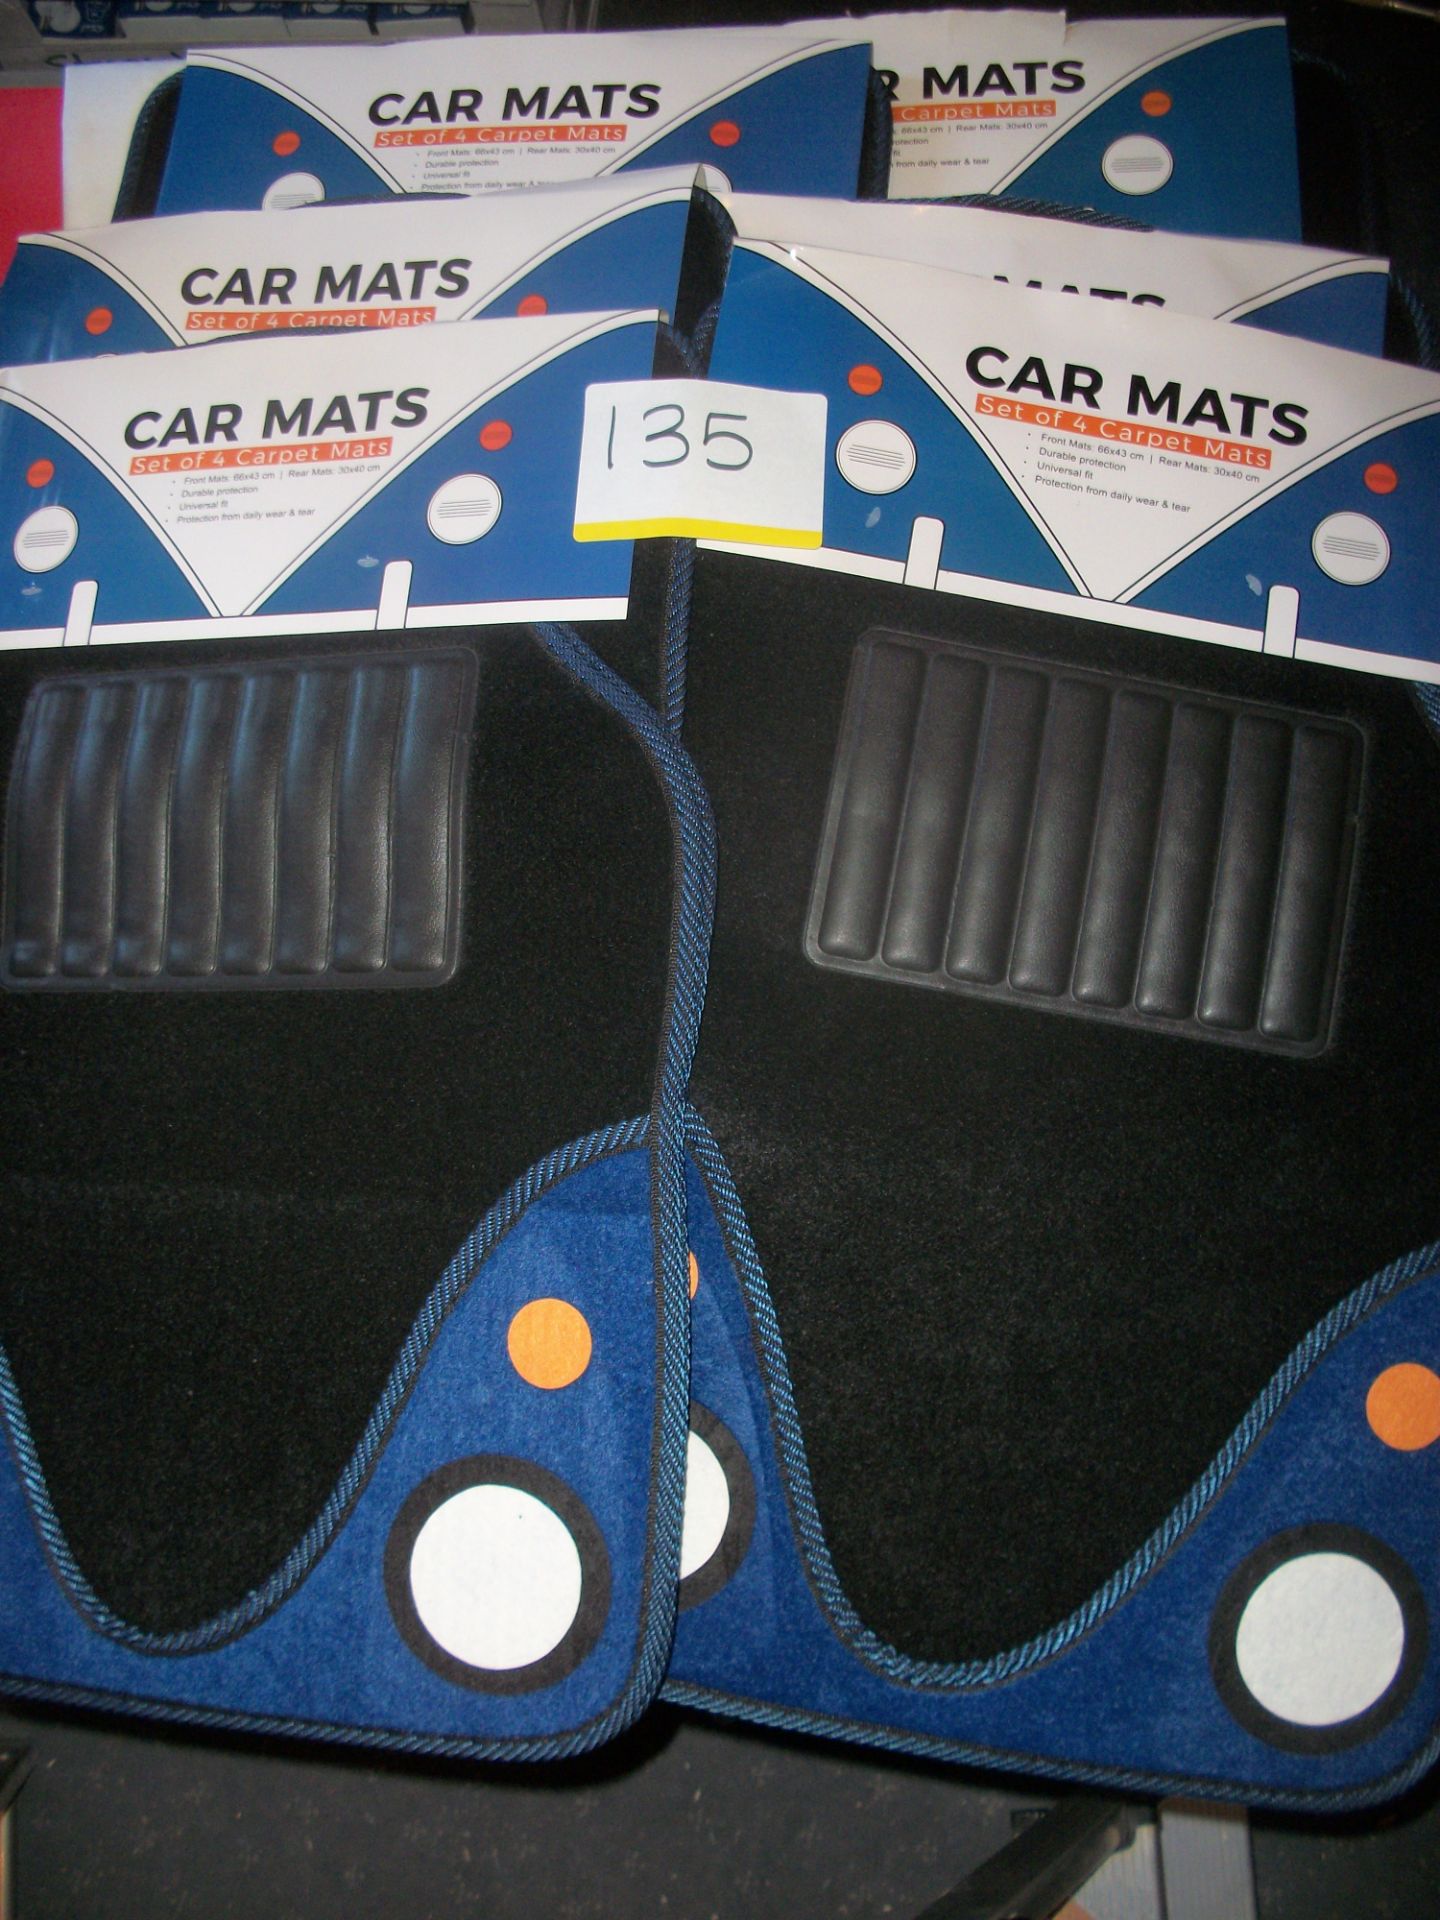 6 x Halford Set of 4 Car Mats